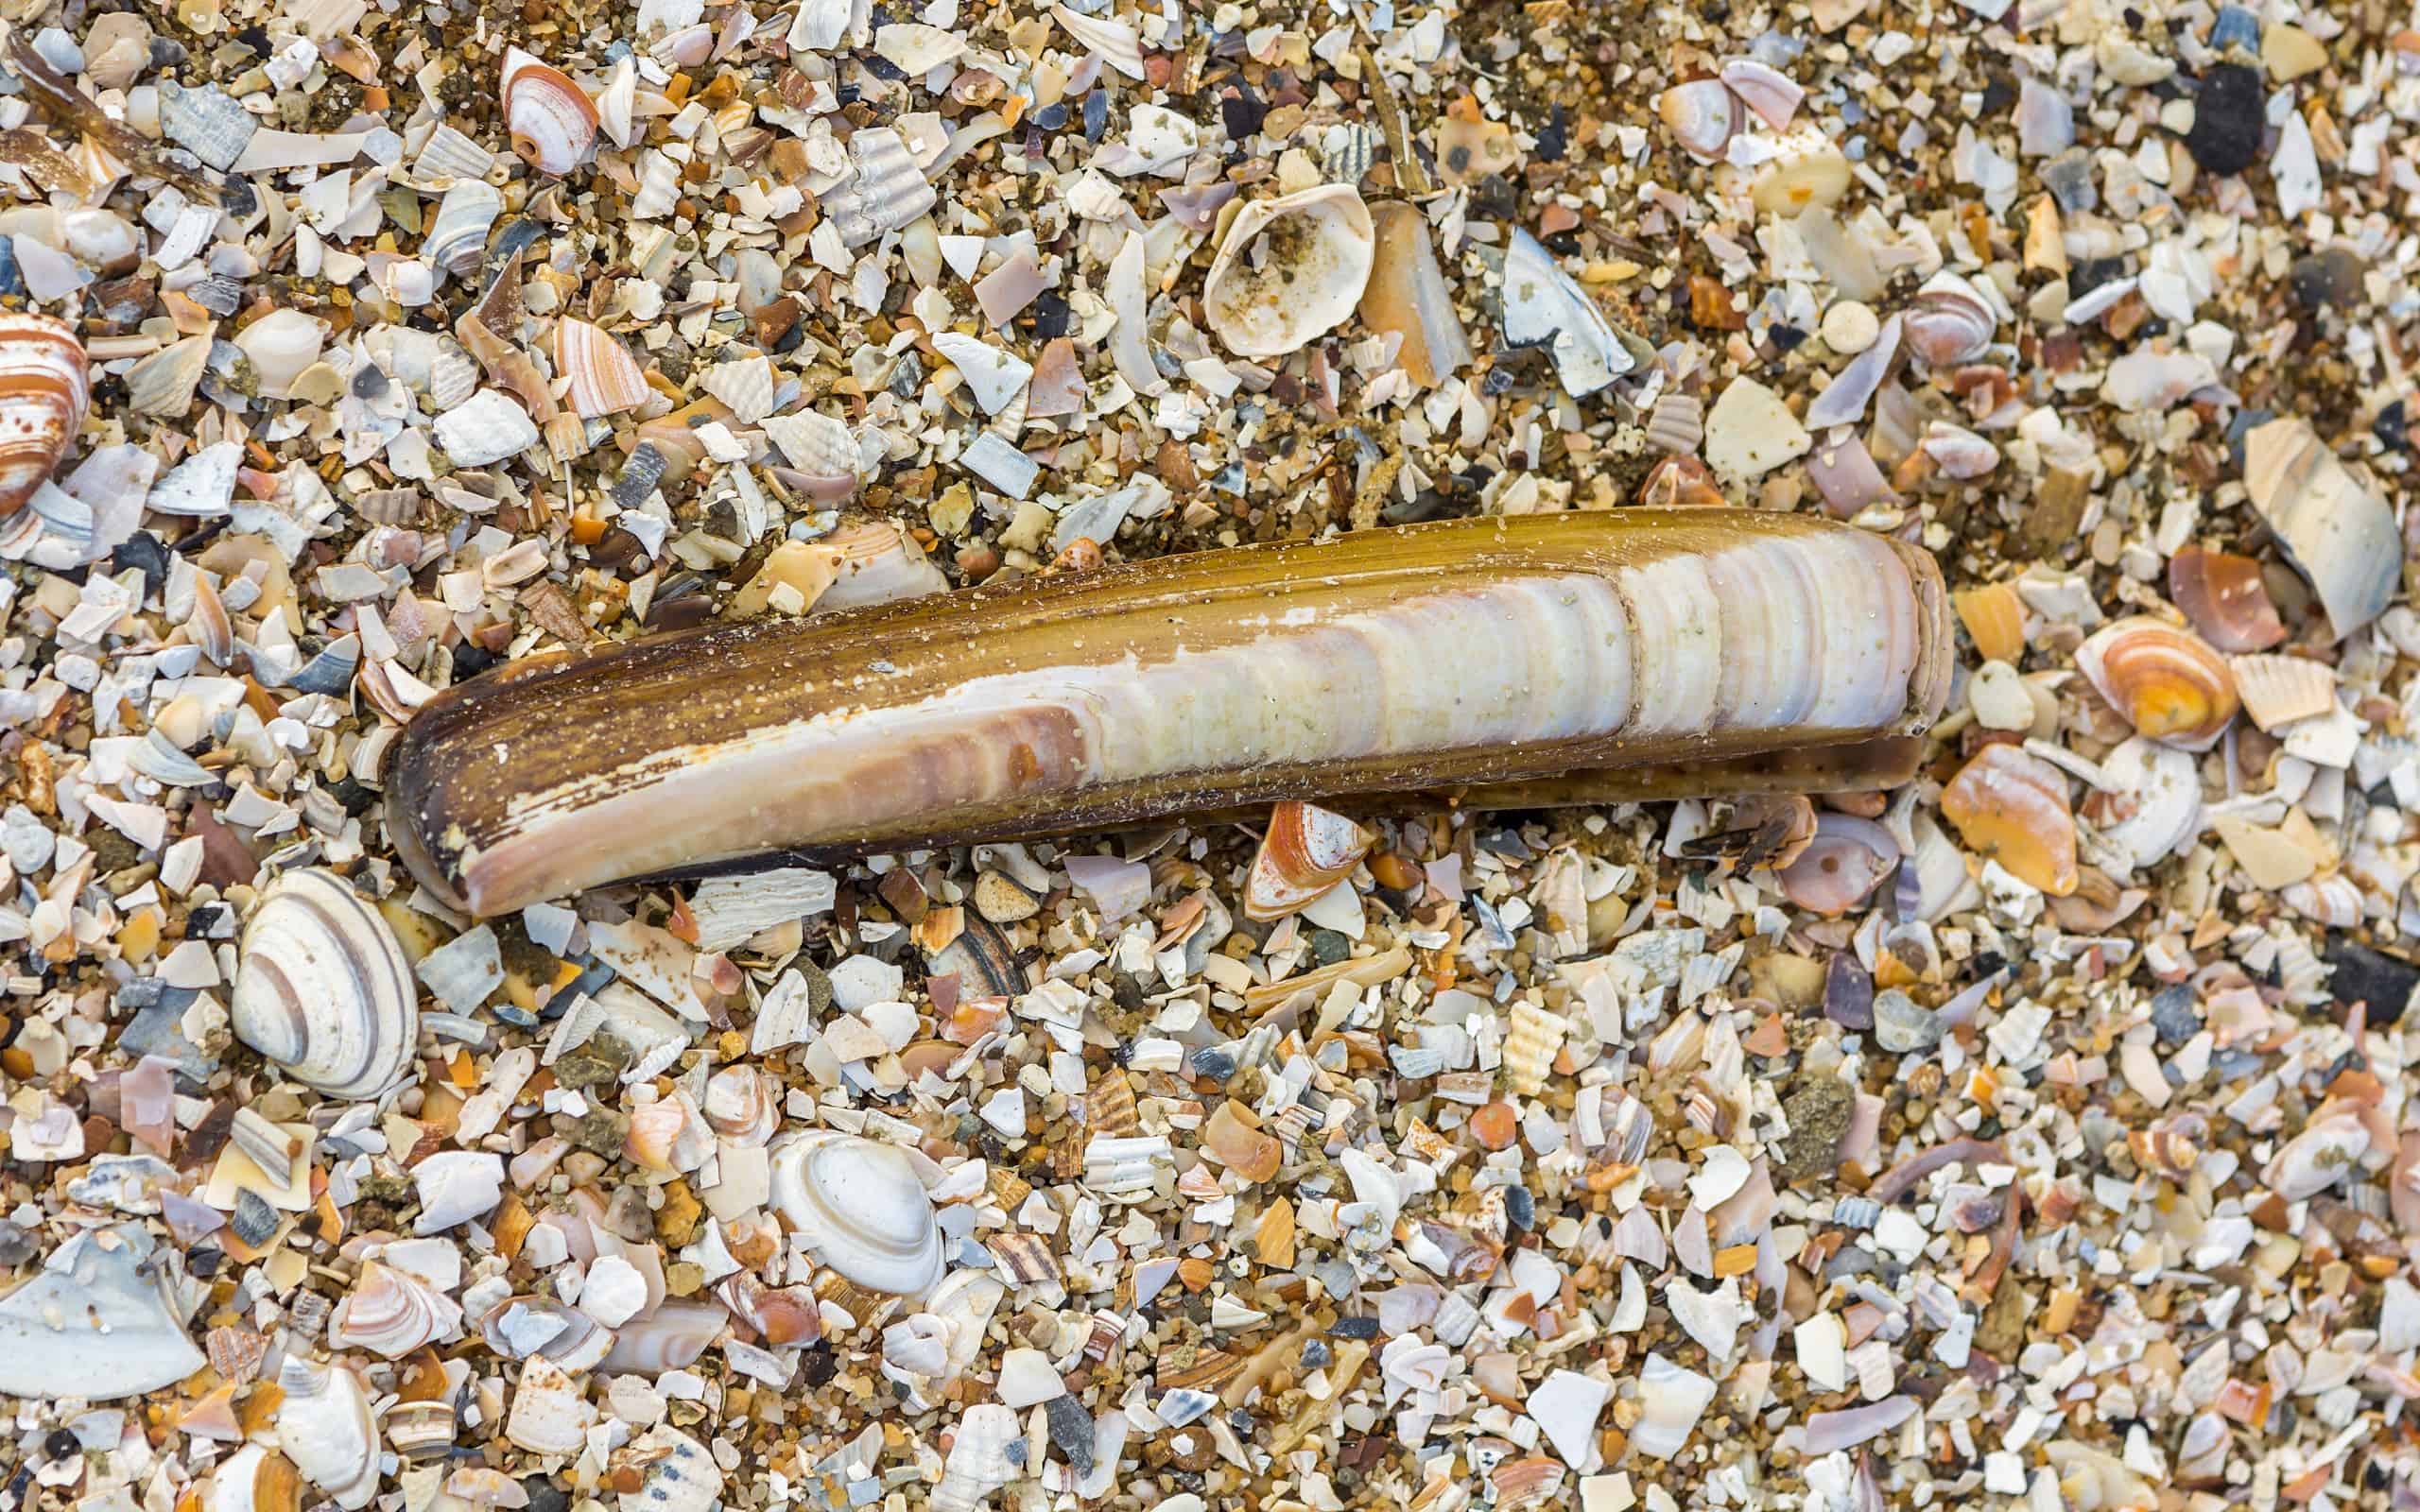 Antlantic razor clam on bed of crushed seashells